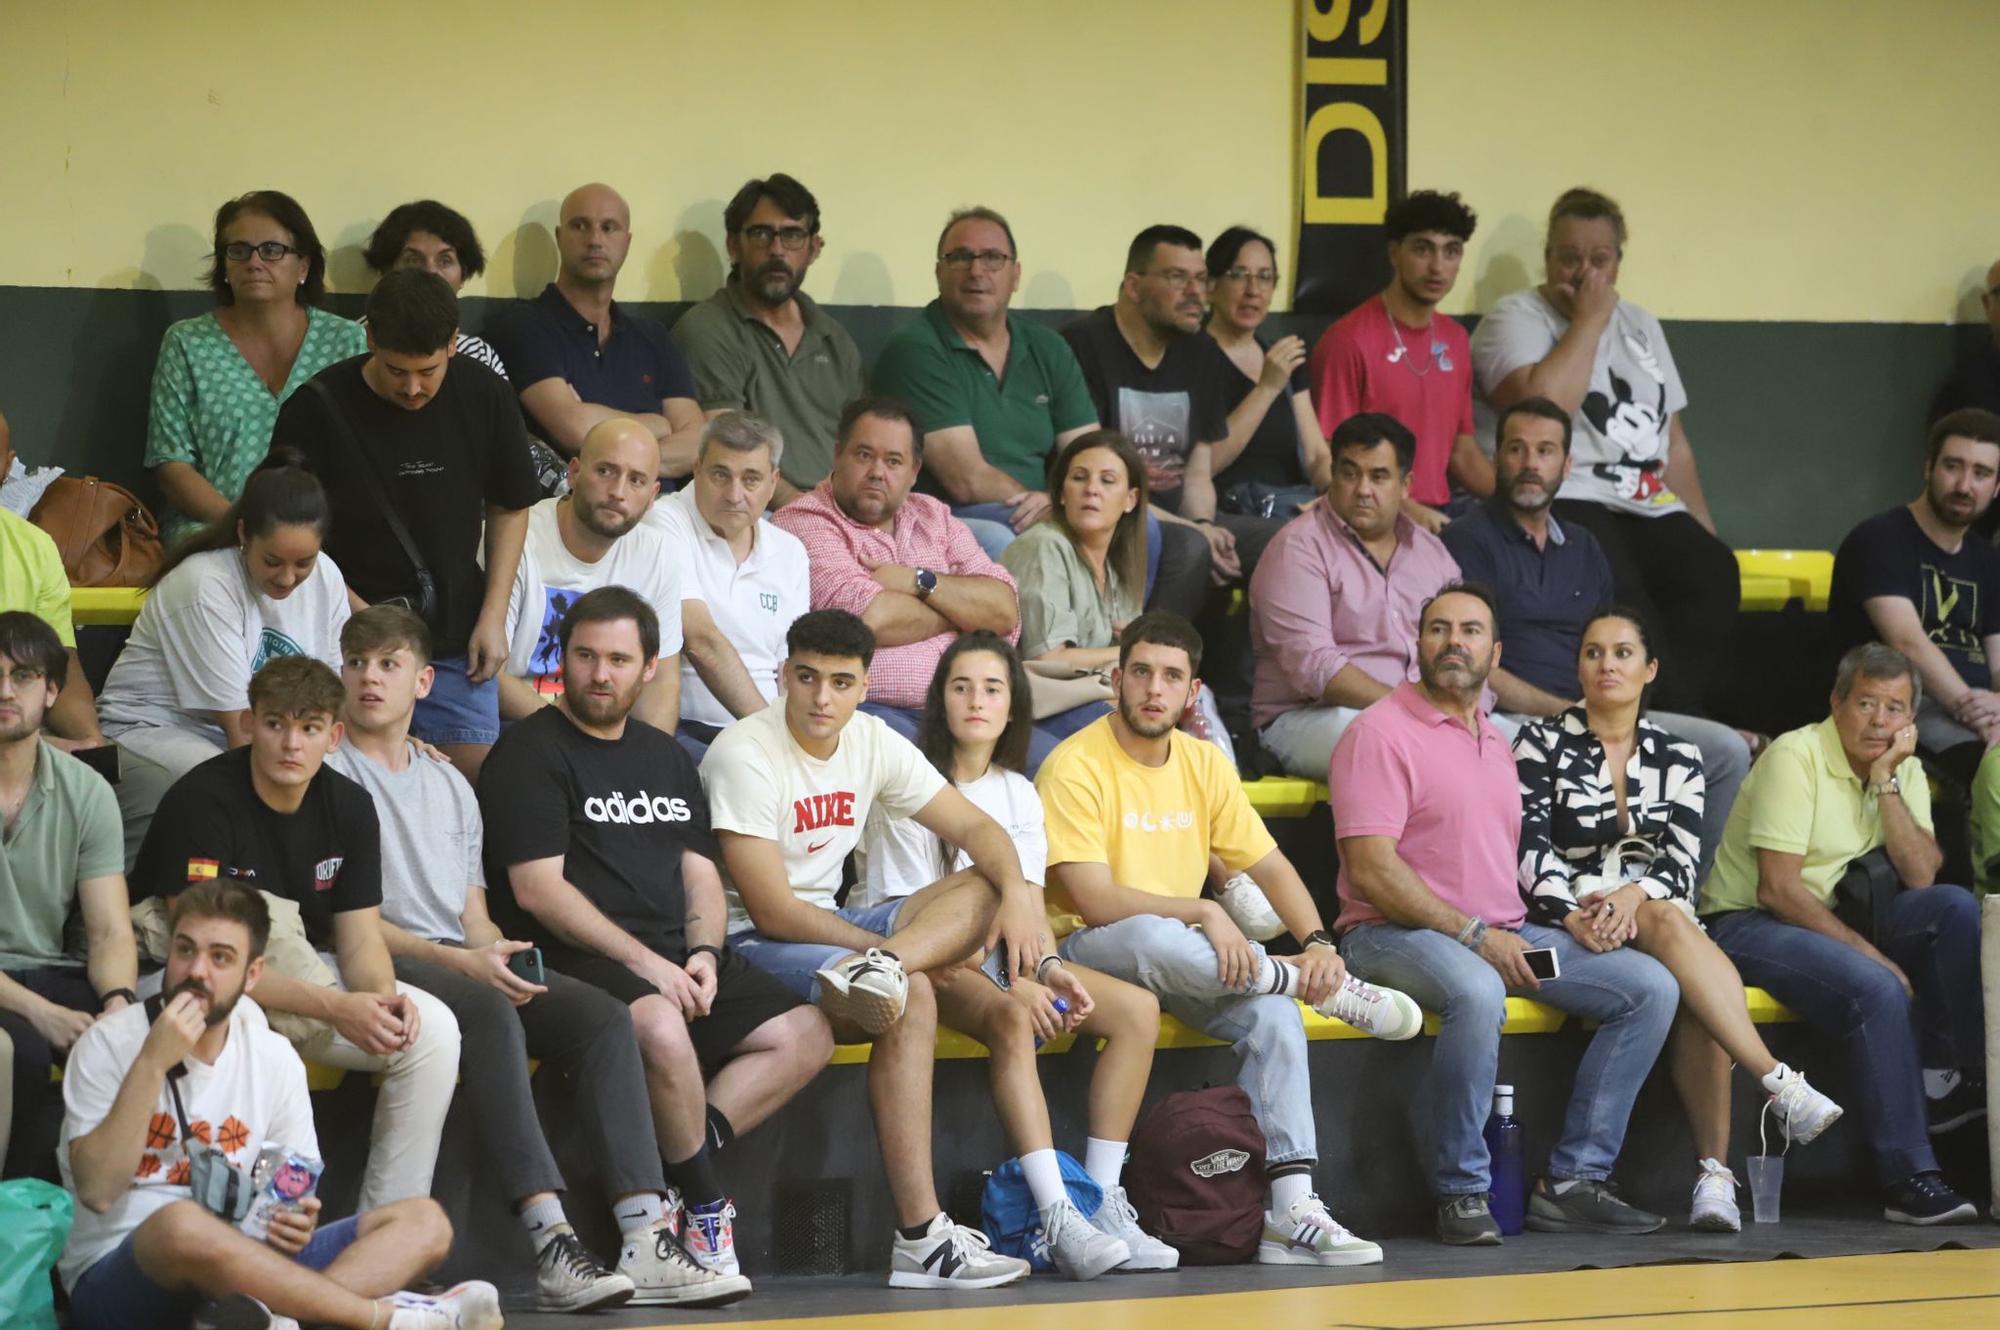 La semifinal de Copa Diputación Coto Córdoba Baloncesto - Peñarroya, en imágenes